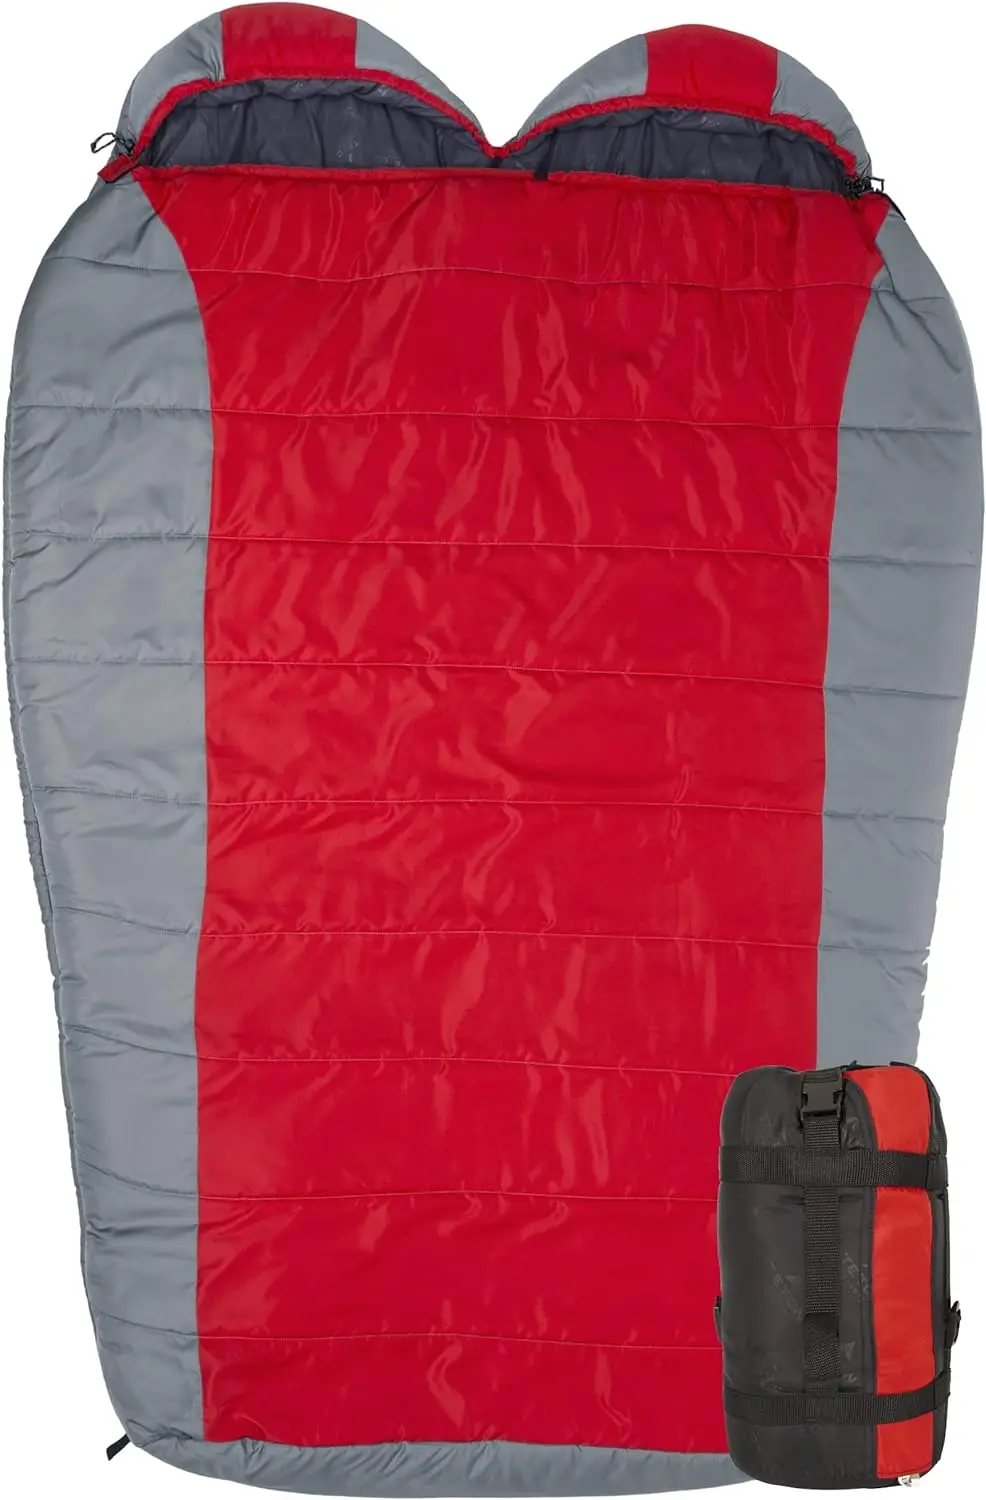 

Сверхлегкий Двойной спальный мешок; Легкий спальный мешок для пеших прогулок и кемпинга на открытом воздухе; Компрессионный мешок в комплекте;